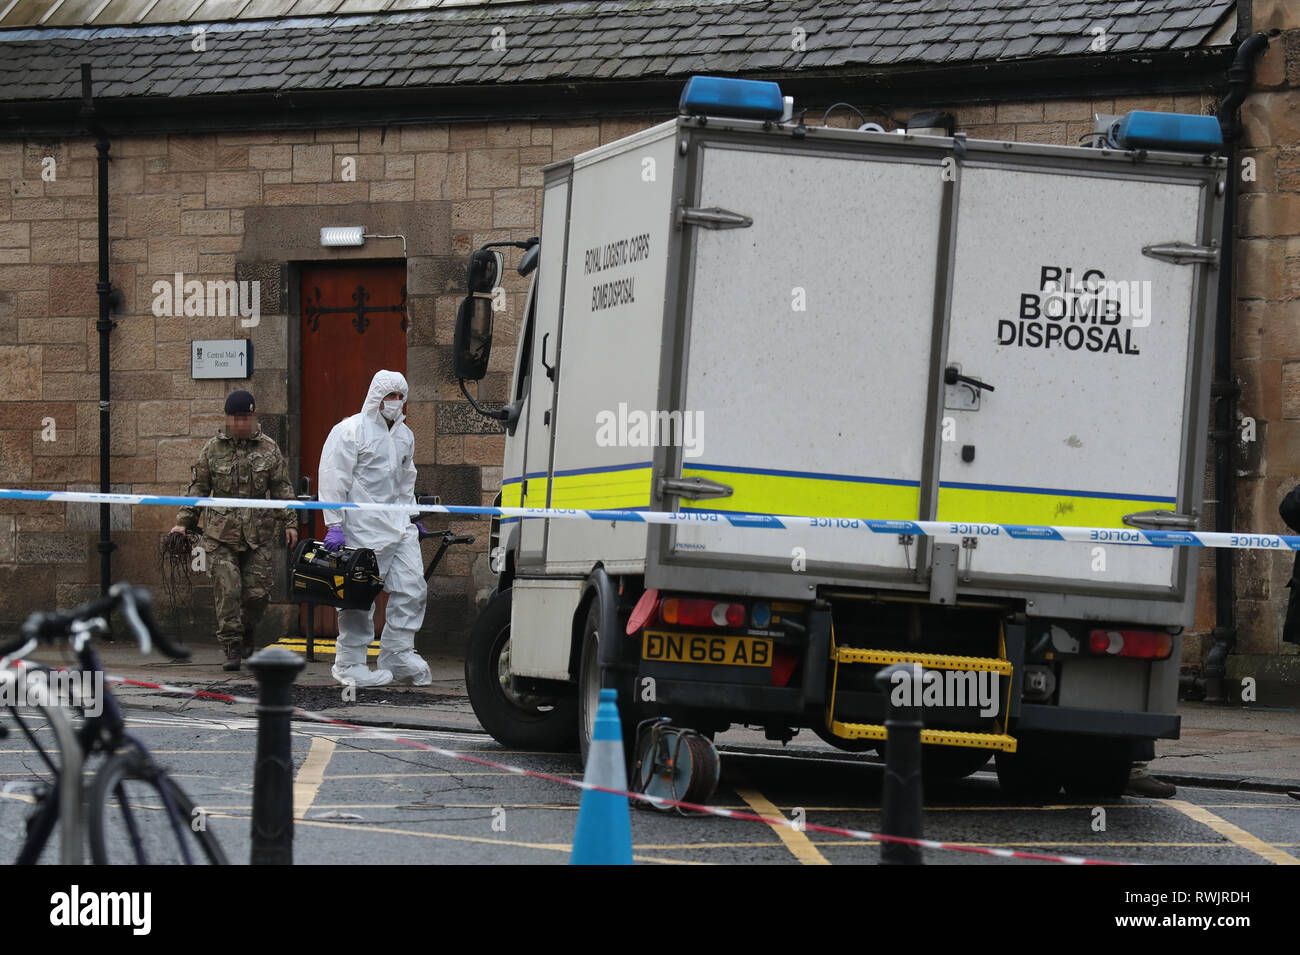 Avec l'IMAGE PAR PA PHOTO 24 Royal Corps Logistique personnel bombes quittent la salle du courrier de l'Université de Glasgow, où un colis suspect a été trouvé conduisant à l'évacuation de l'immeuble. Banque D'Images